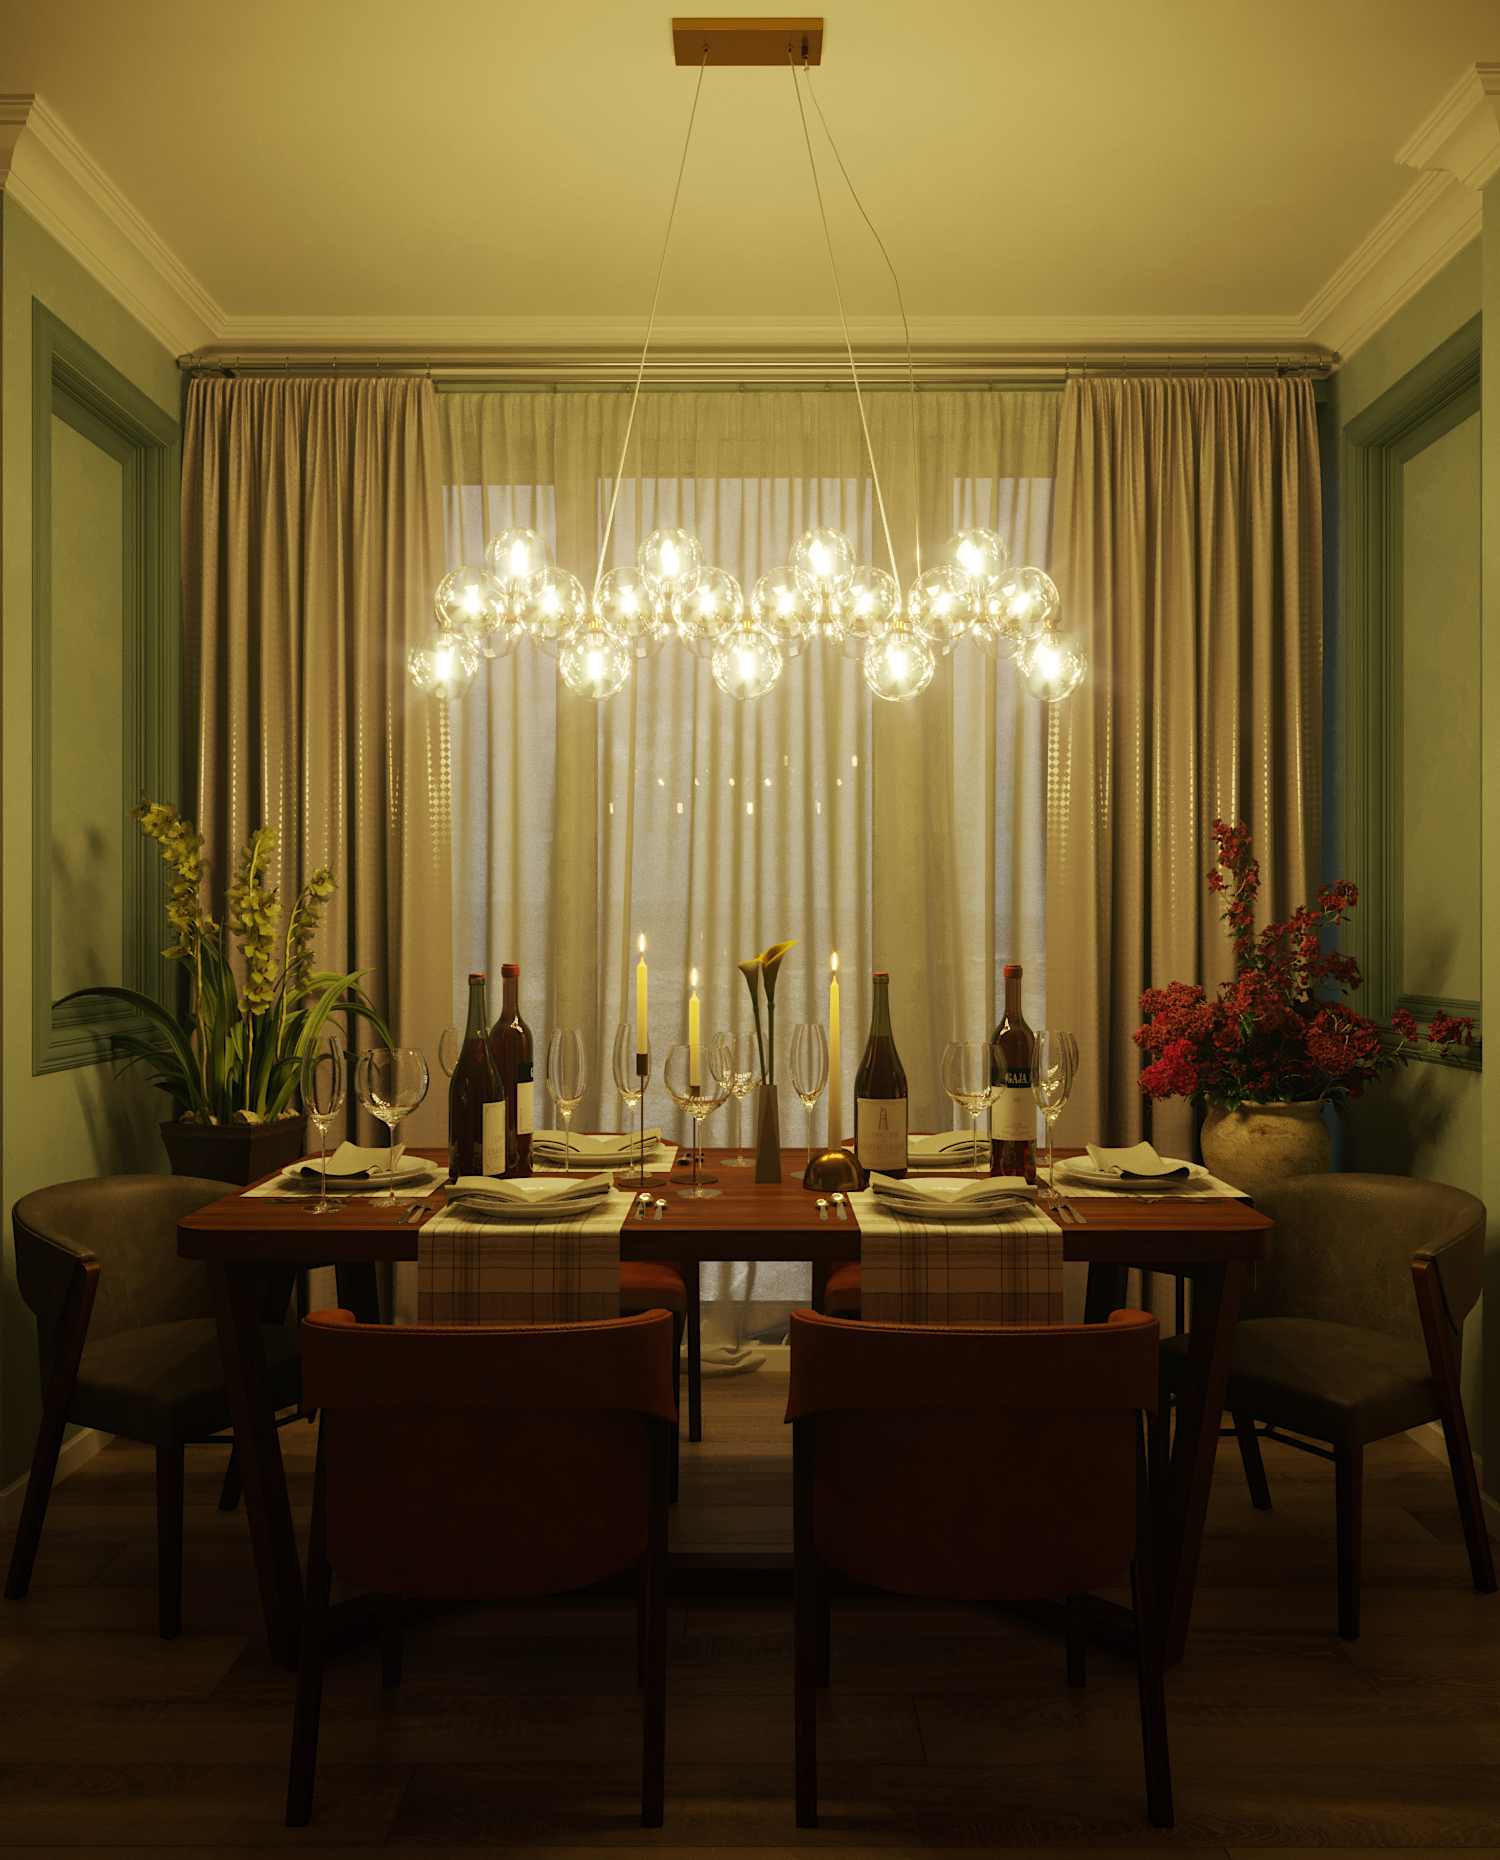 Visualizzazione 3D soggiorno con cucina in 3d max corona render immagine